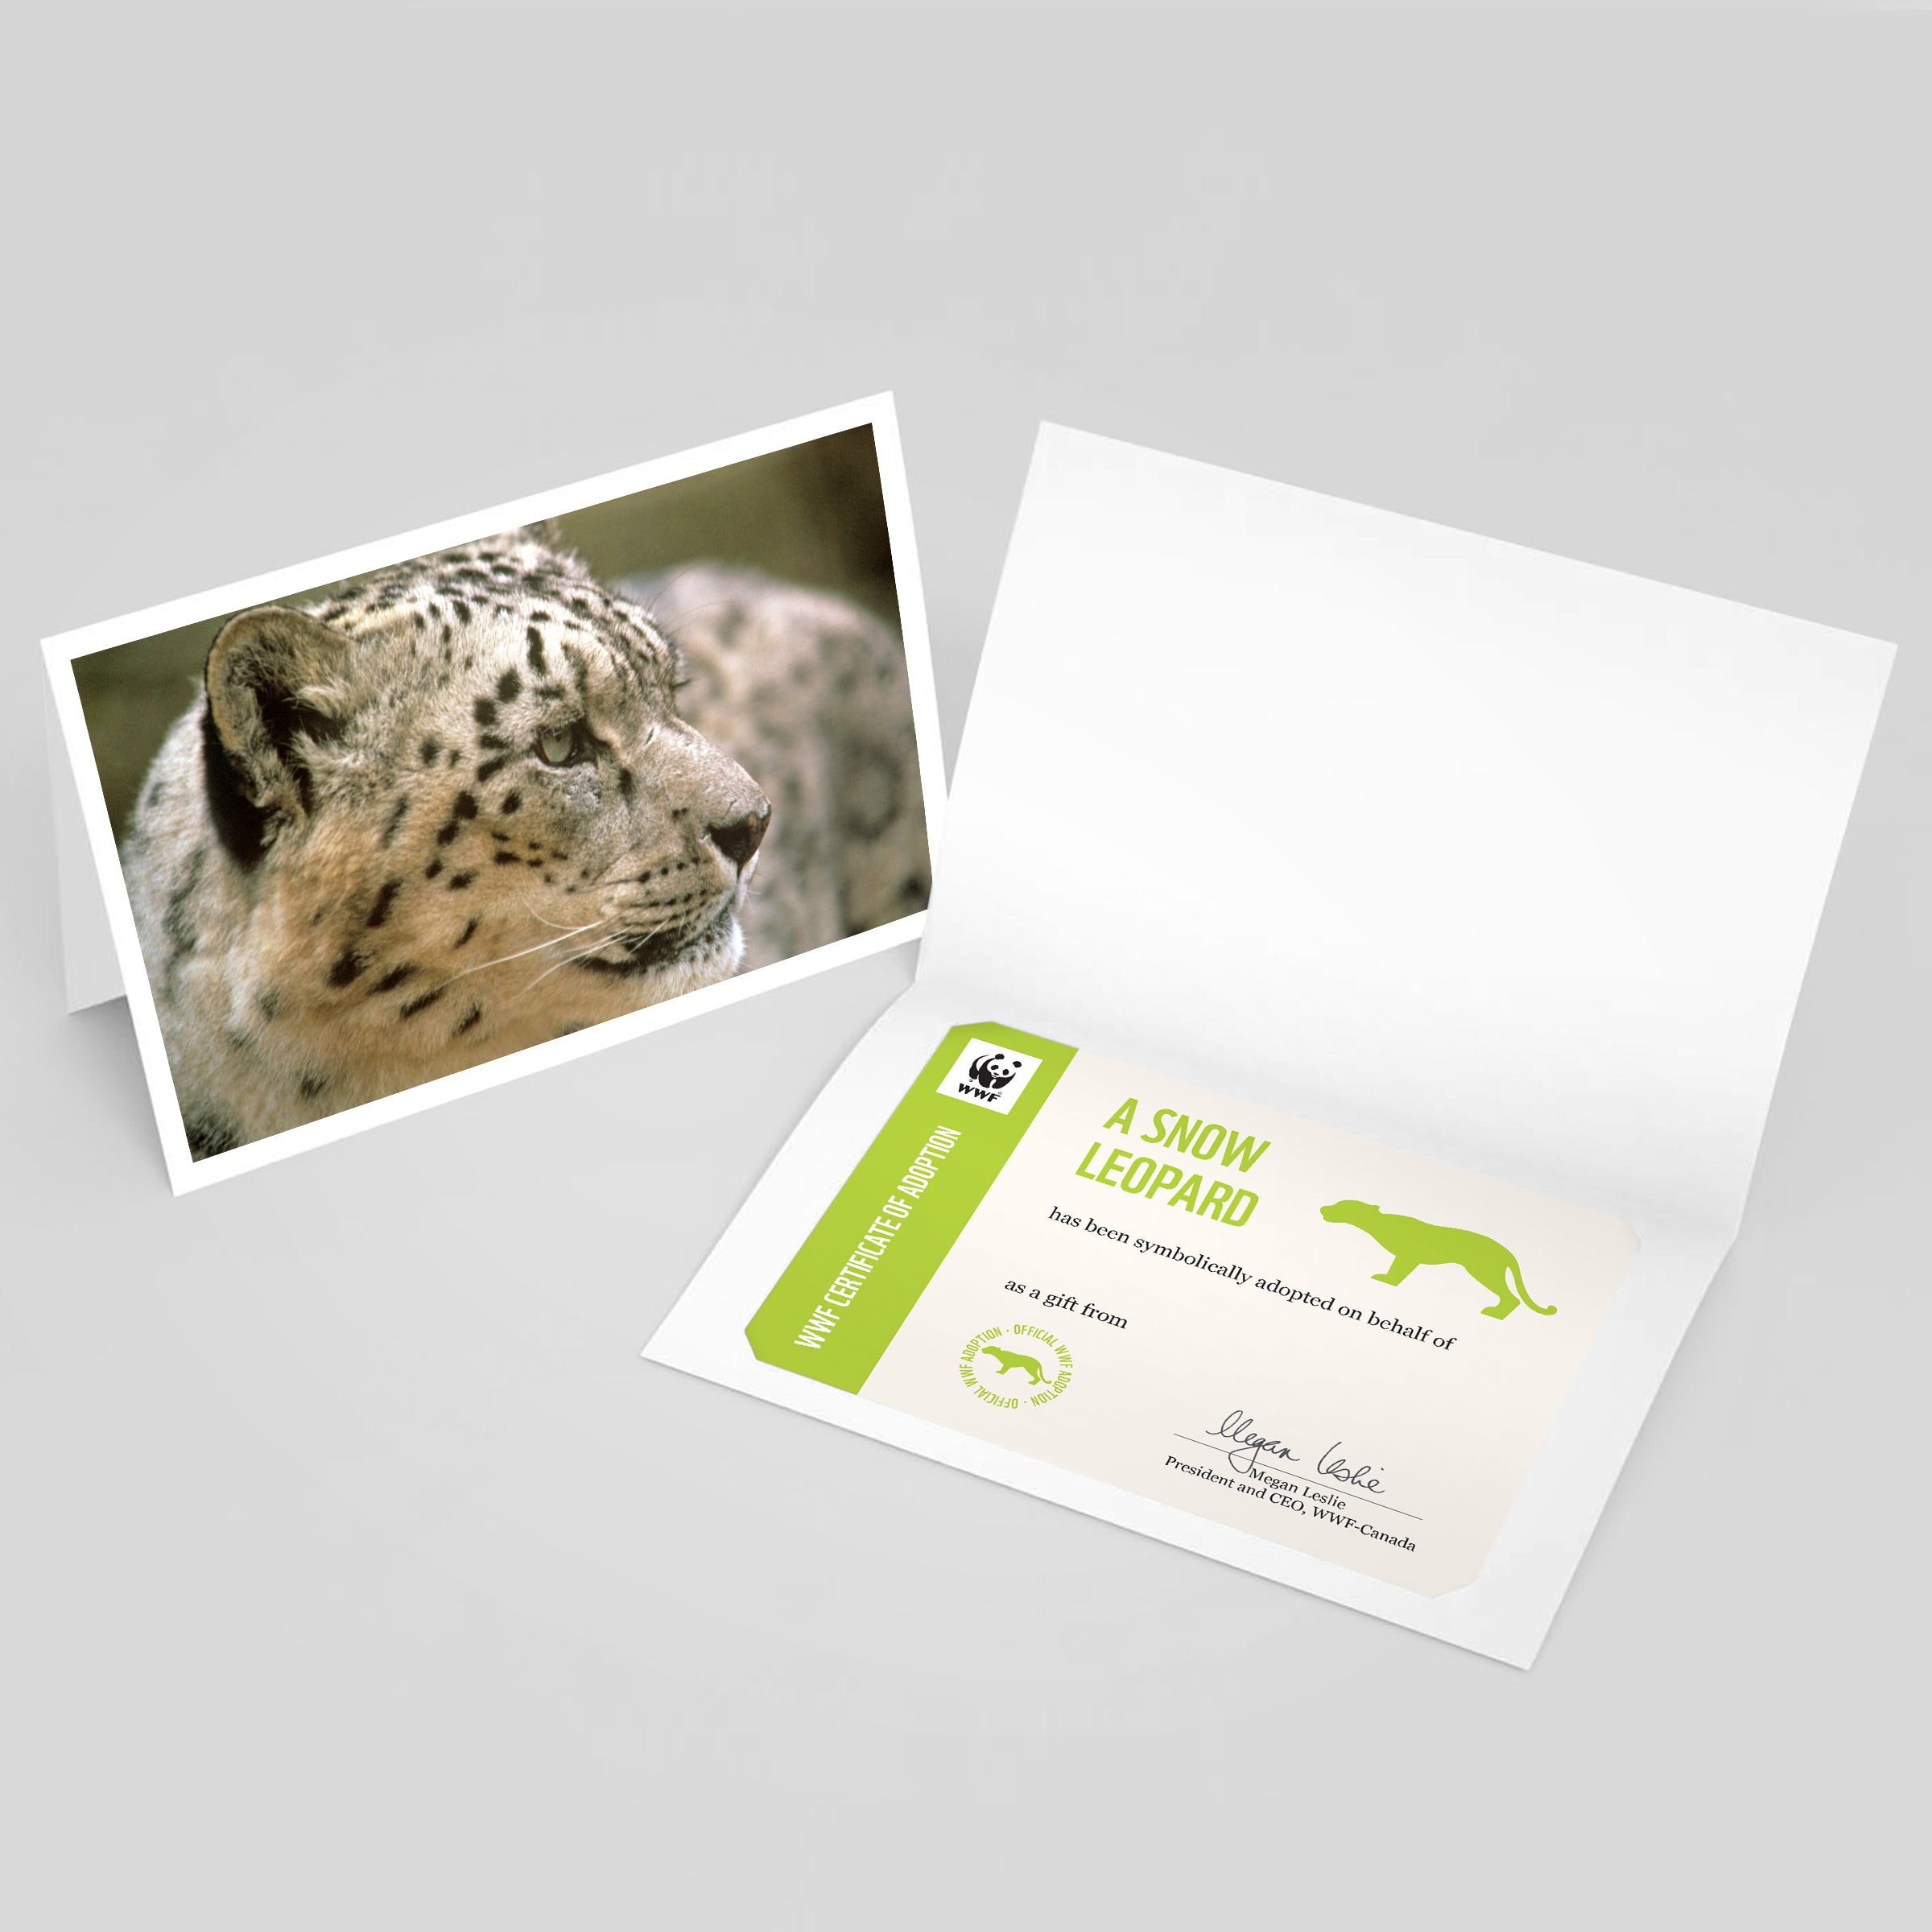 Snow leopard adoption card - WWF-Canada